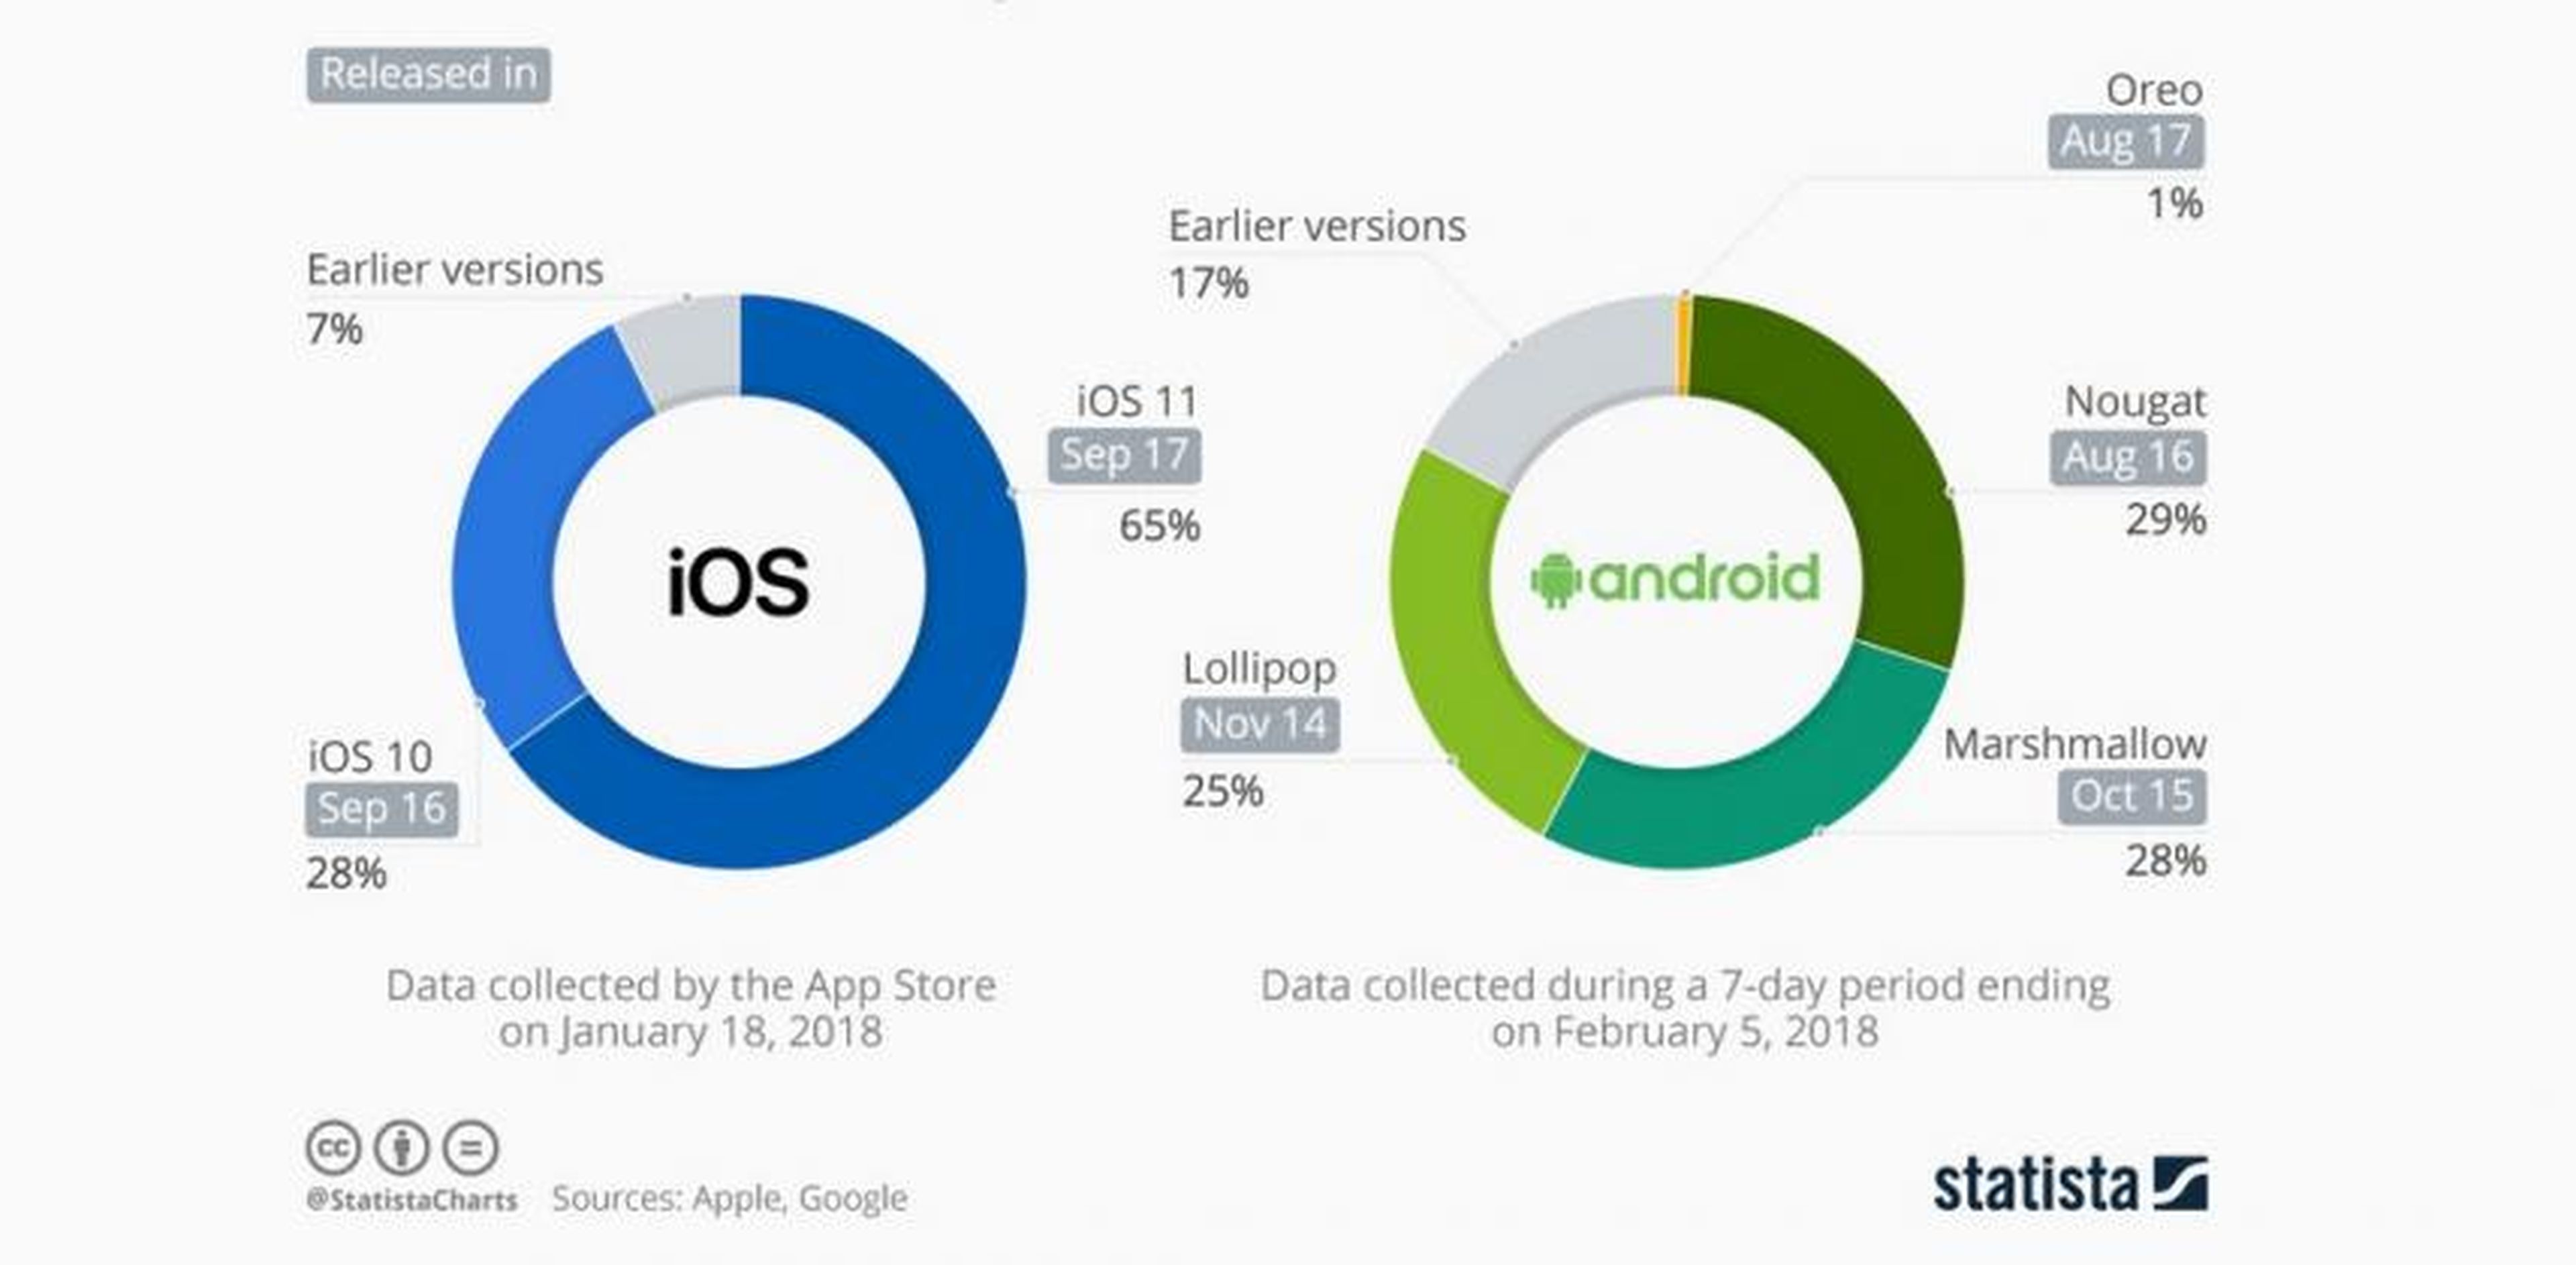 Fragmentación Android vs iOS